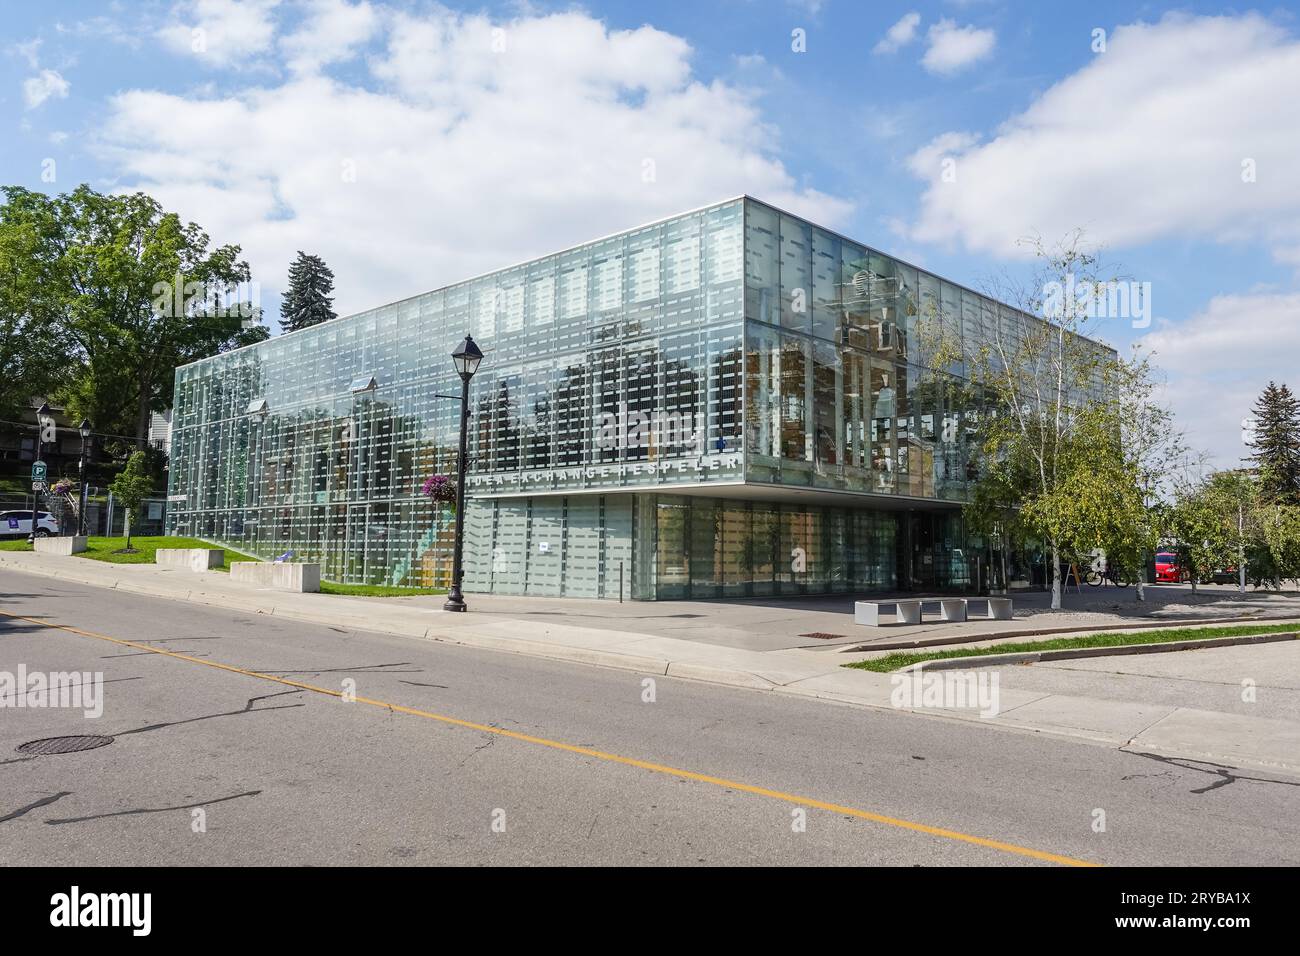 Das Hespeler Library Building in Cambridge, Ontario, Kanada, ist eine Fusion-Architektur mit einer modernen Glasfassade, die ein altes Gebäude umgibt Stockfoto